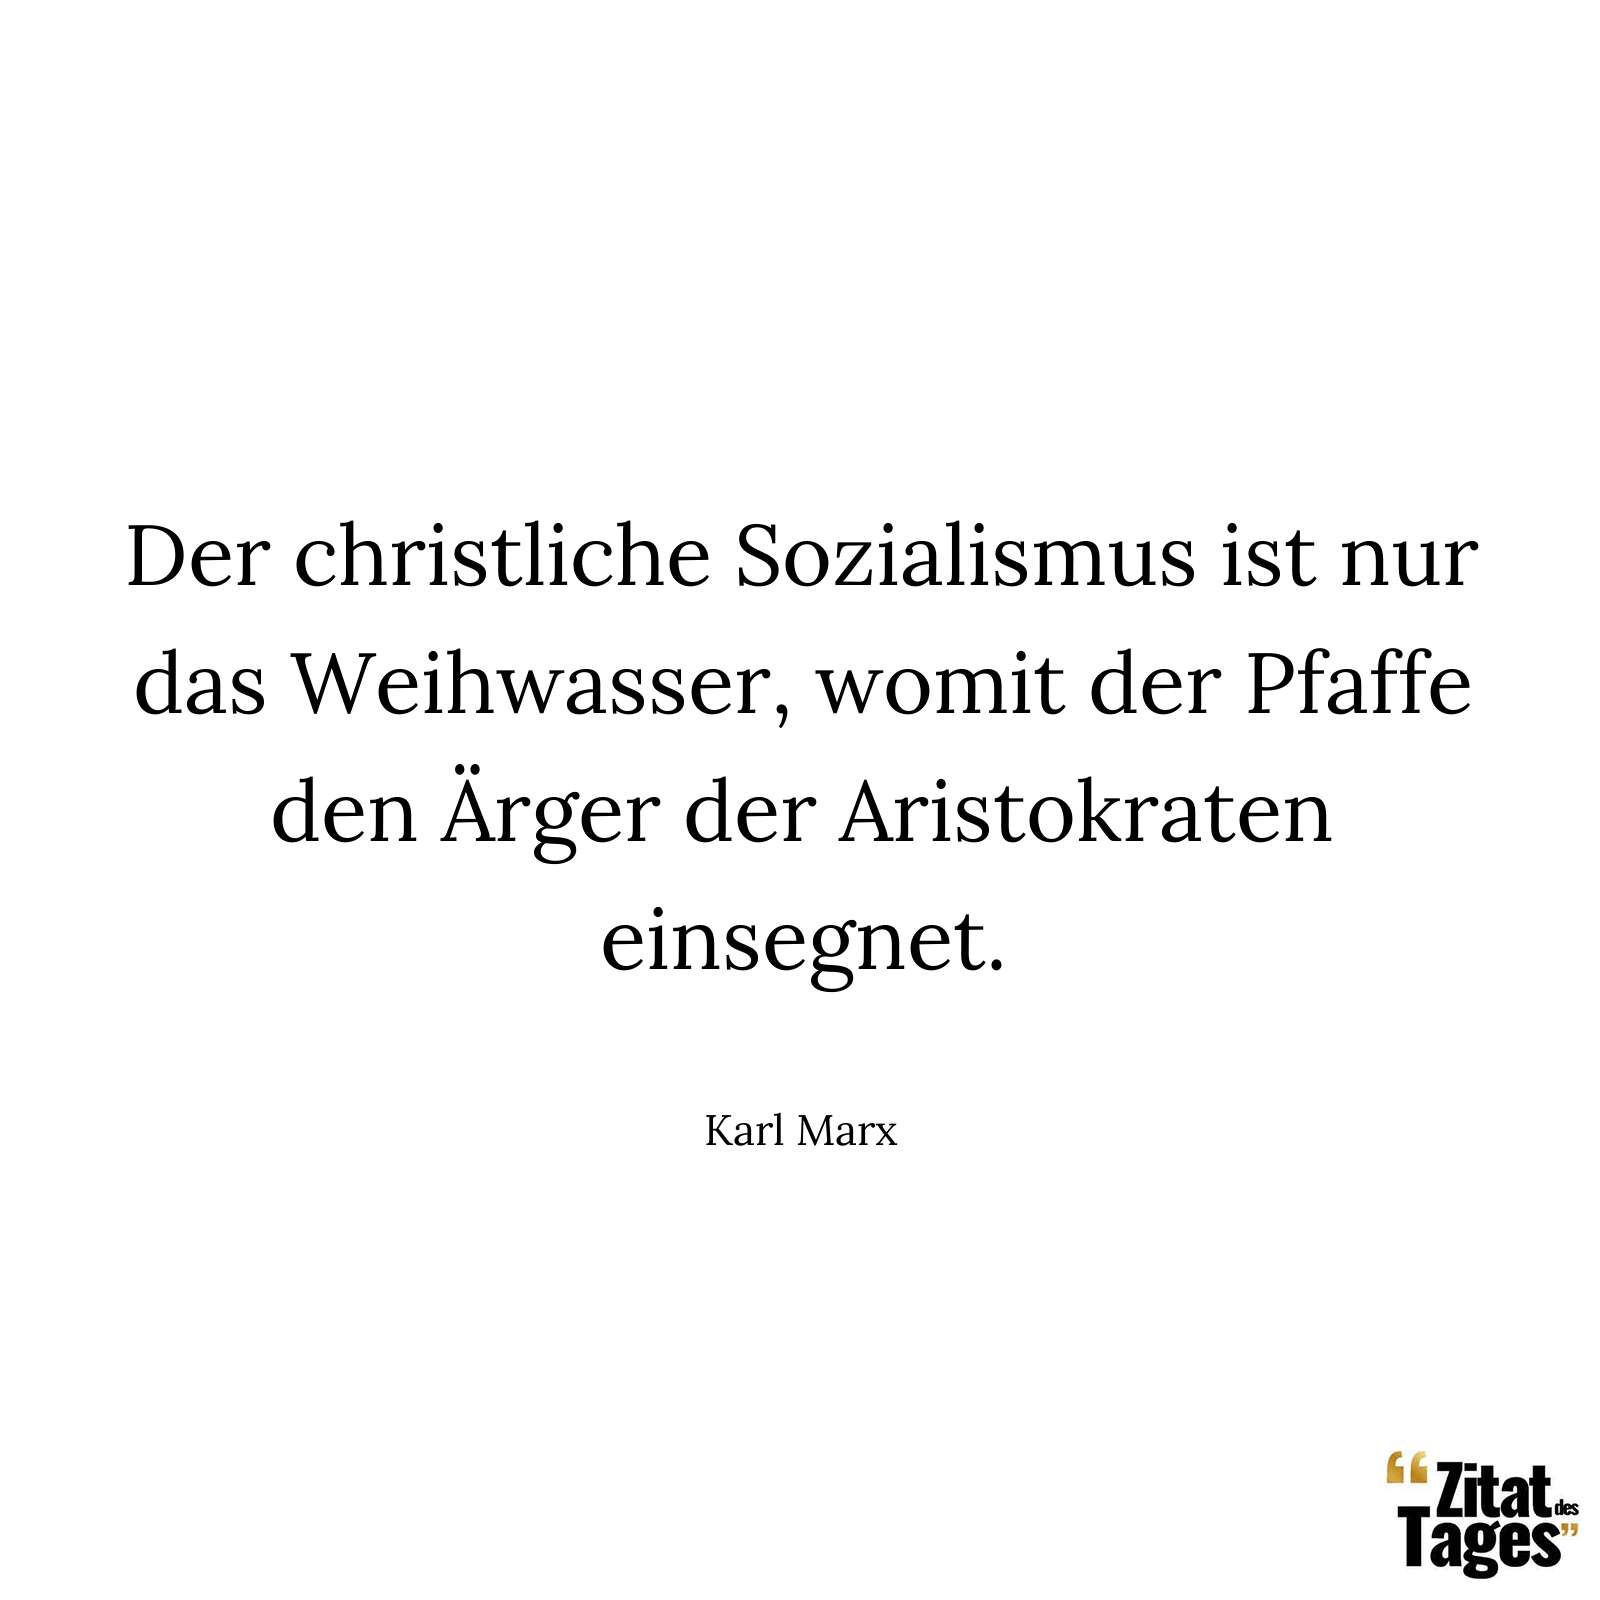 Der christliche Sozialismus ist nur das Weihwasser, womit der Pfaffe den Ärger der Aristokraten einsegnet. - Karl Marx